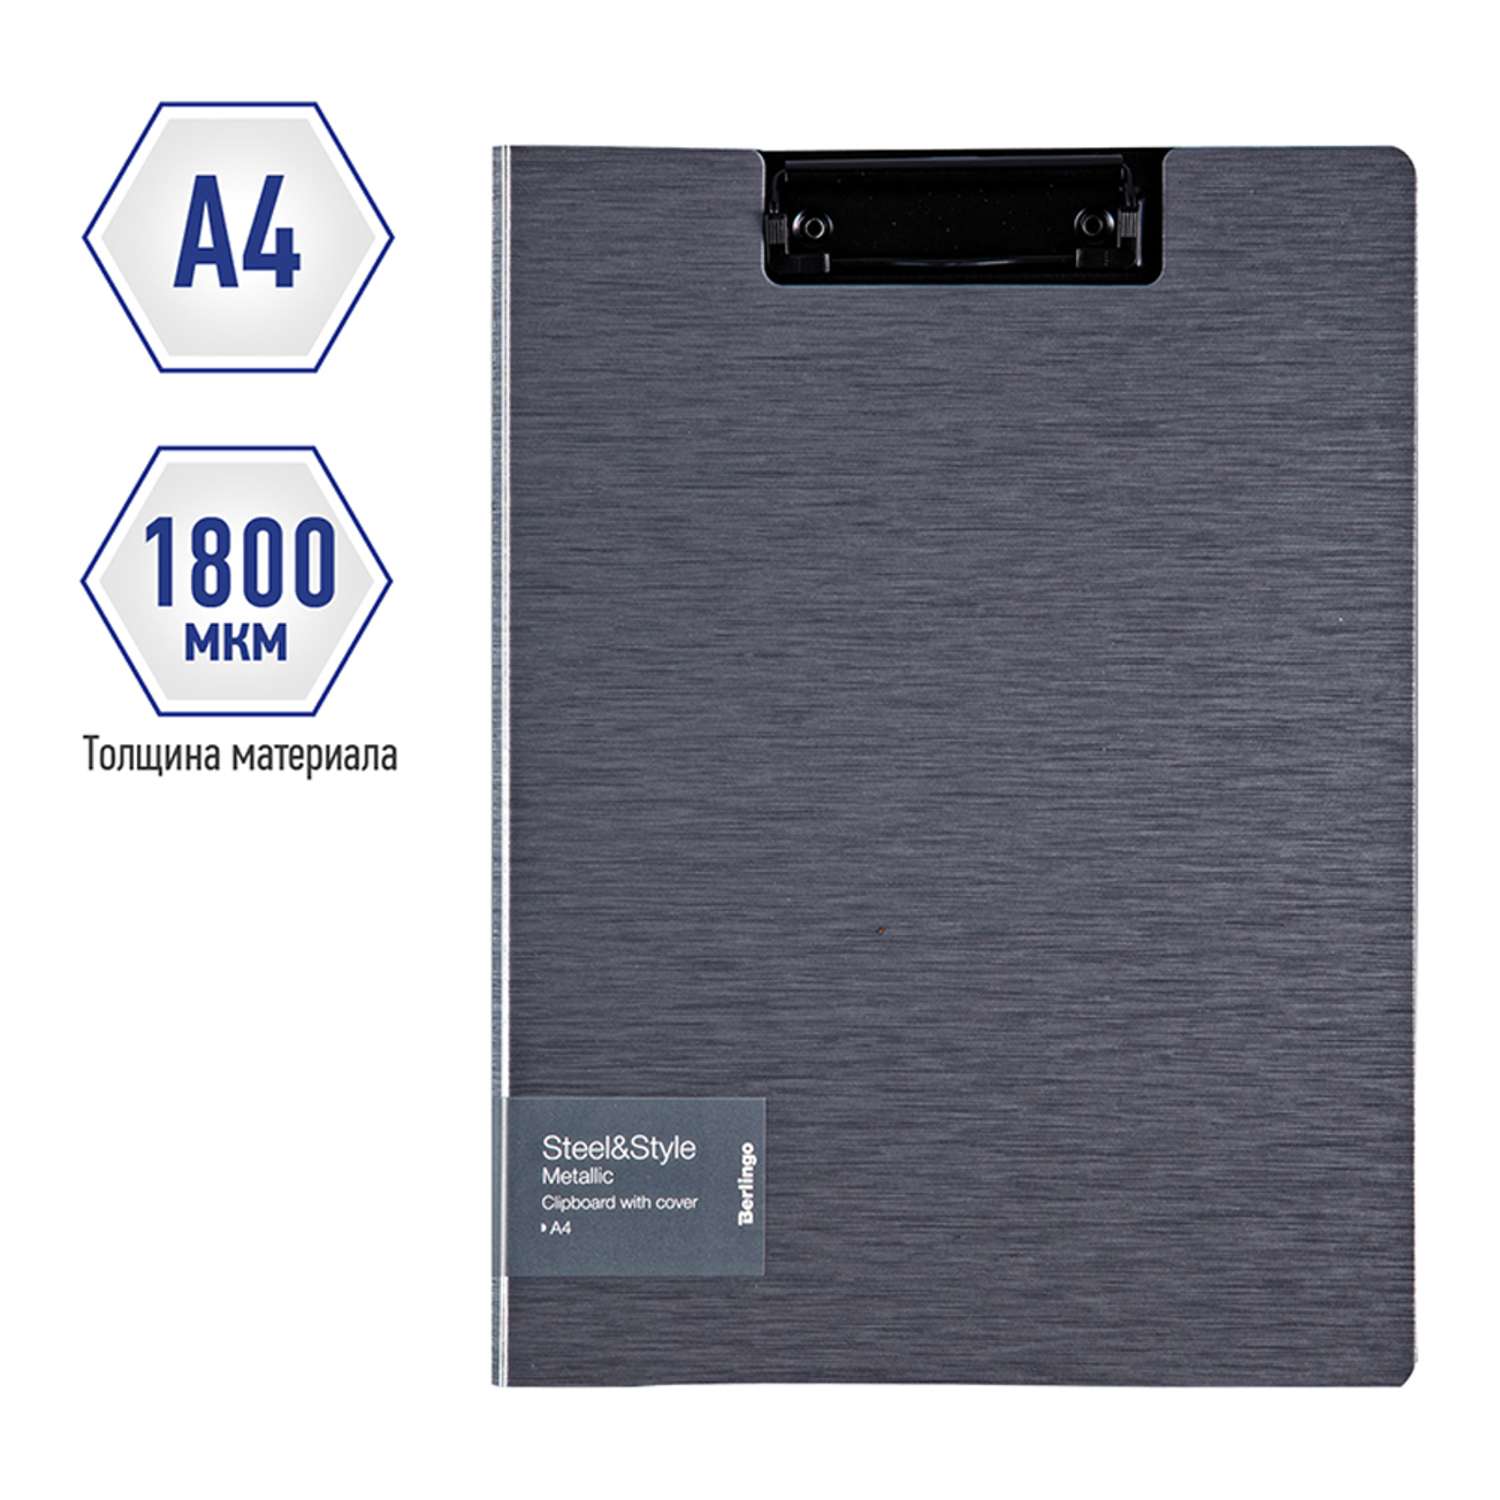 Папка-планшет с зажимом Berlingo Steel ampStyle А4 пластик полифом серебристый металлик - фото 2